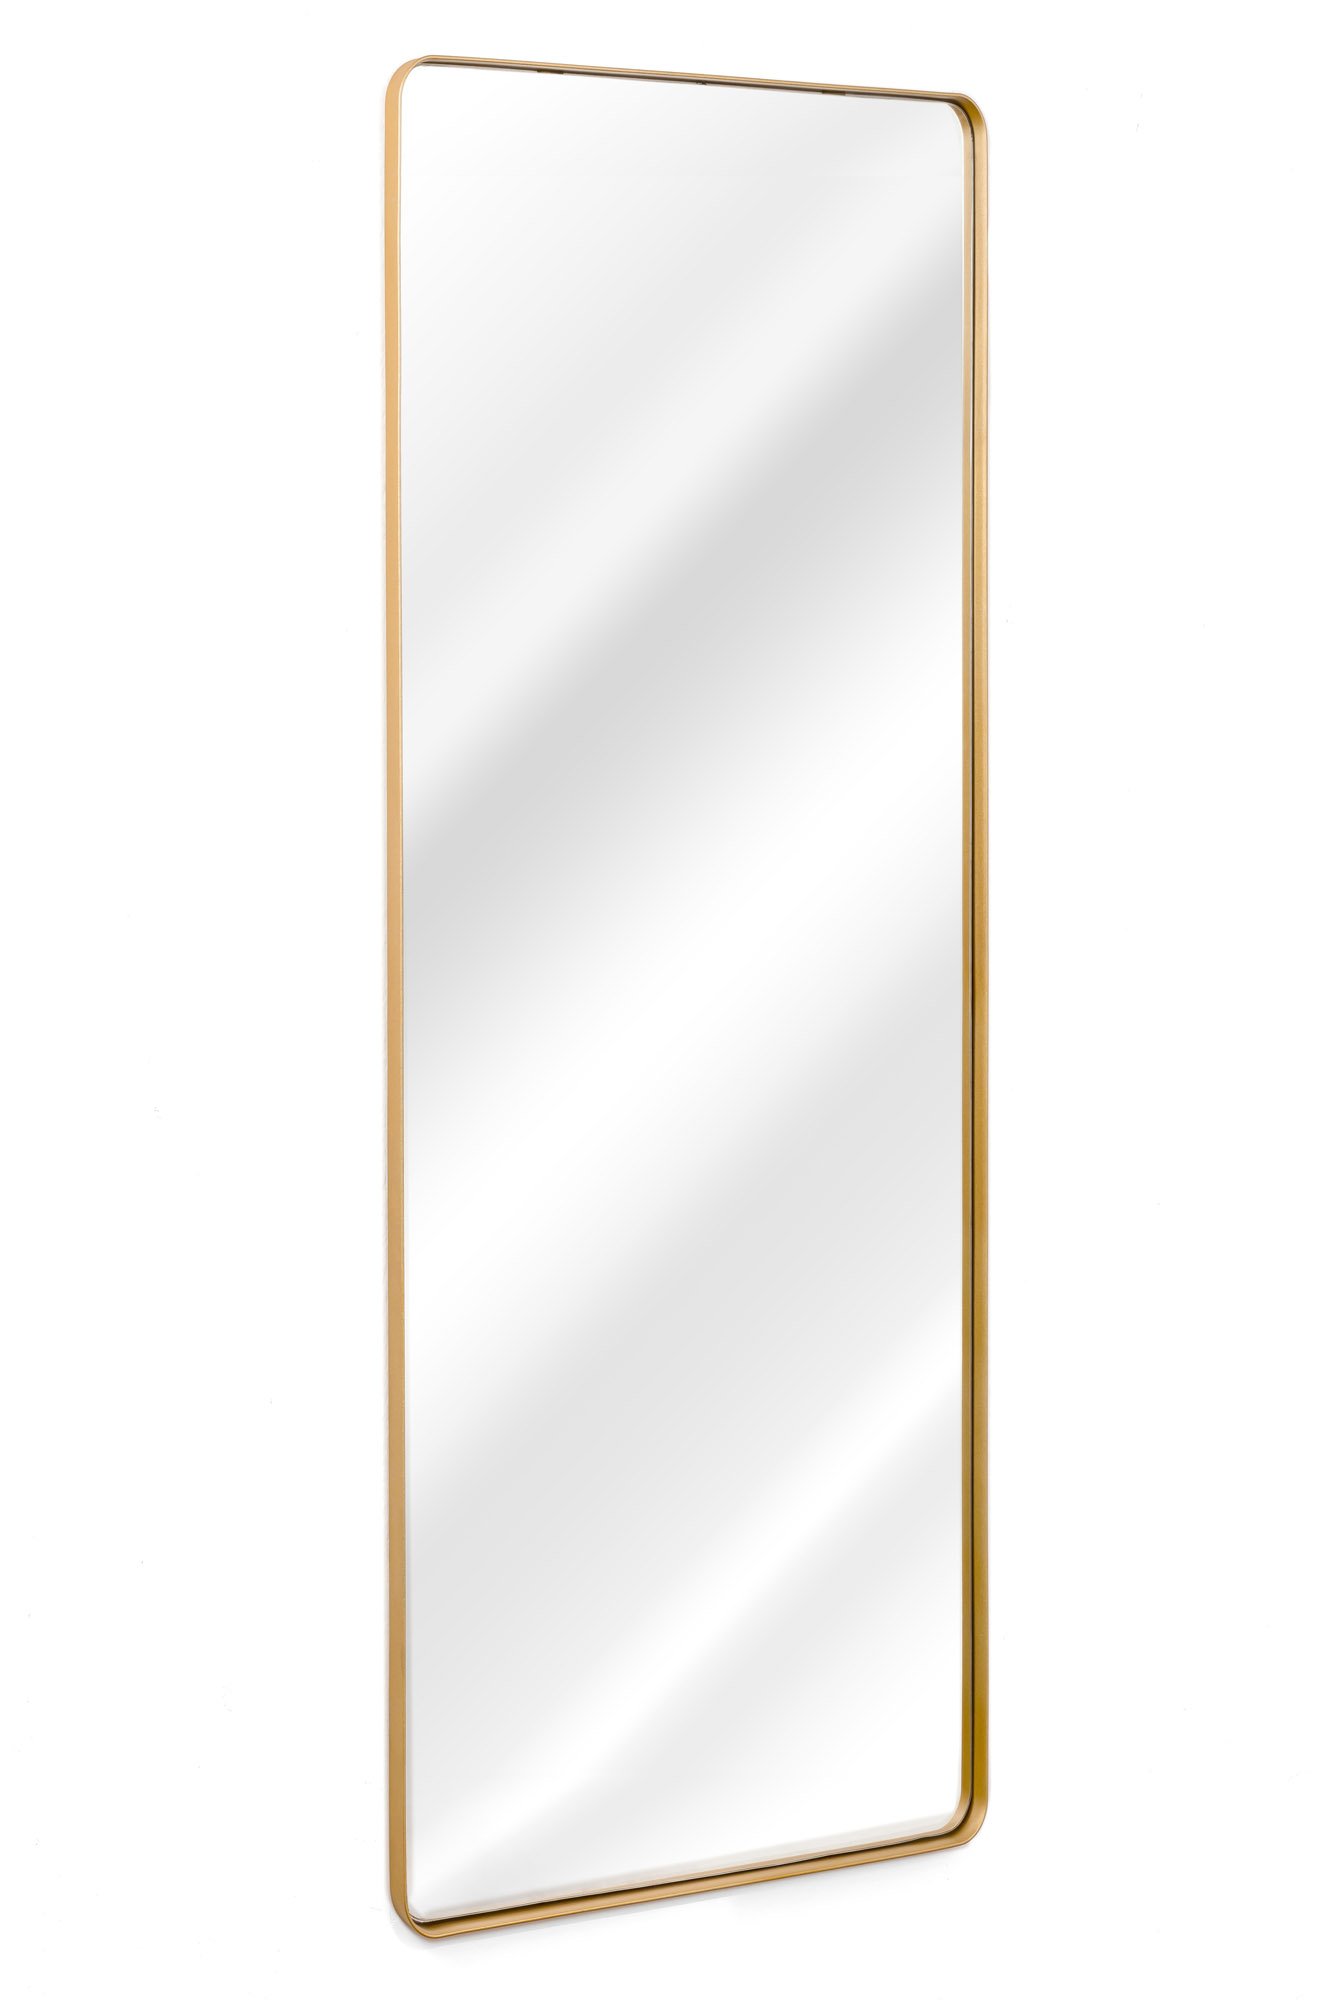 Espelho Retangular com Moldura em Metal Corpo Inteiro170 X 70cm Dourado - 2